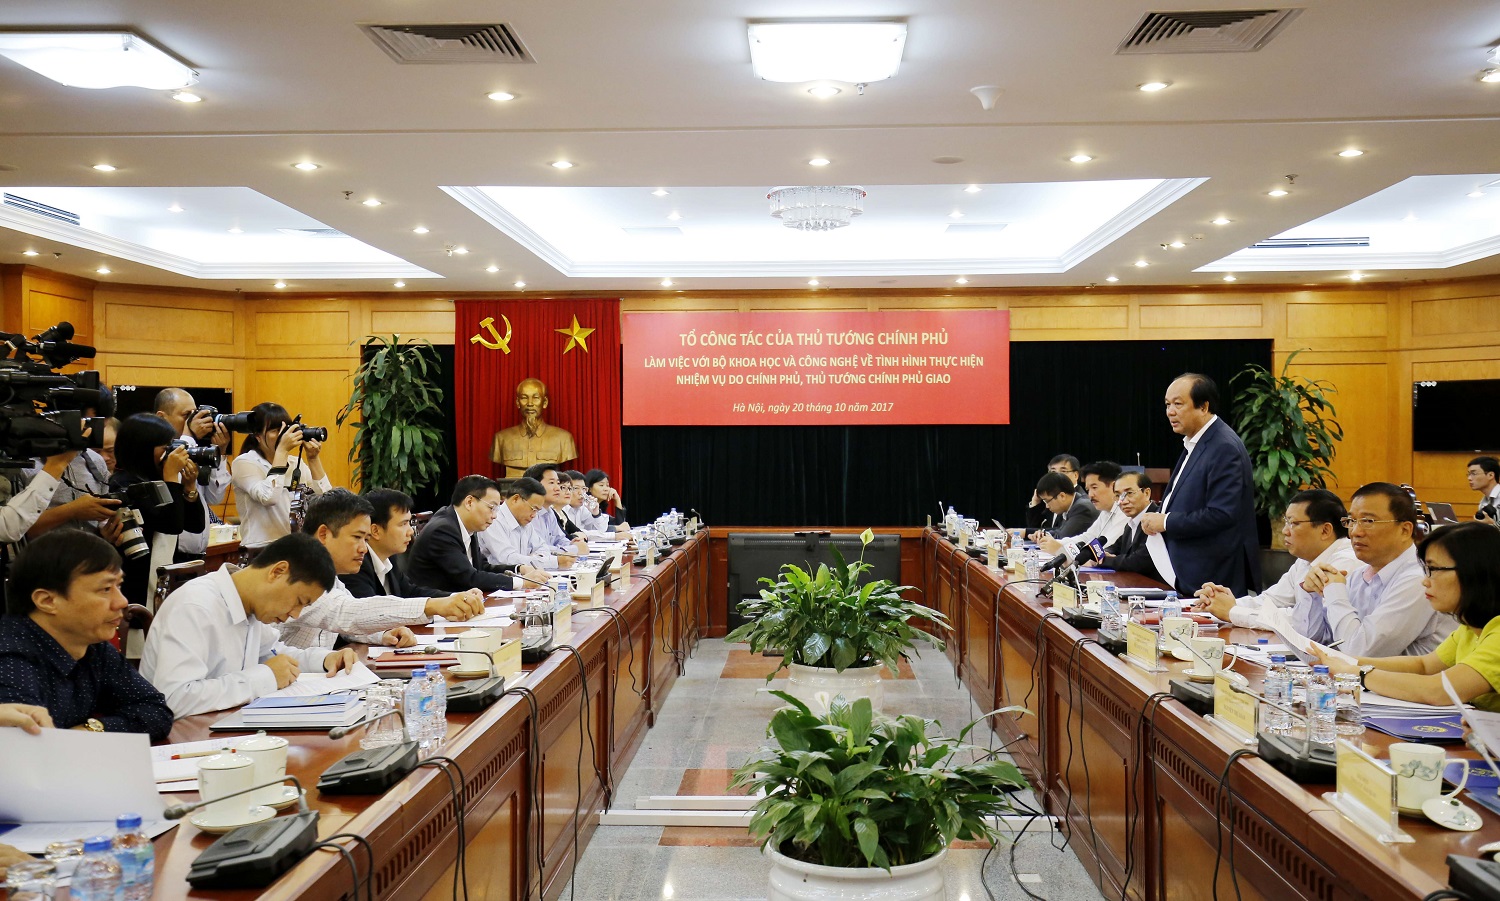  Tổ công tác của Thủ tướng Chính phủ đánh giá cao công t​ác cải cách hành chính tại Bộ KH&CN.